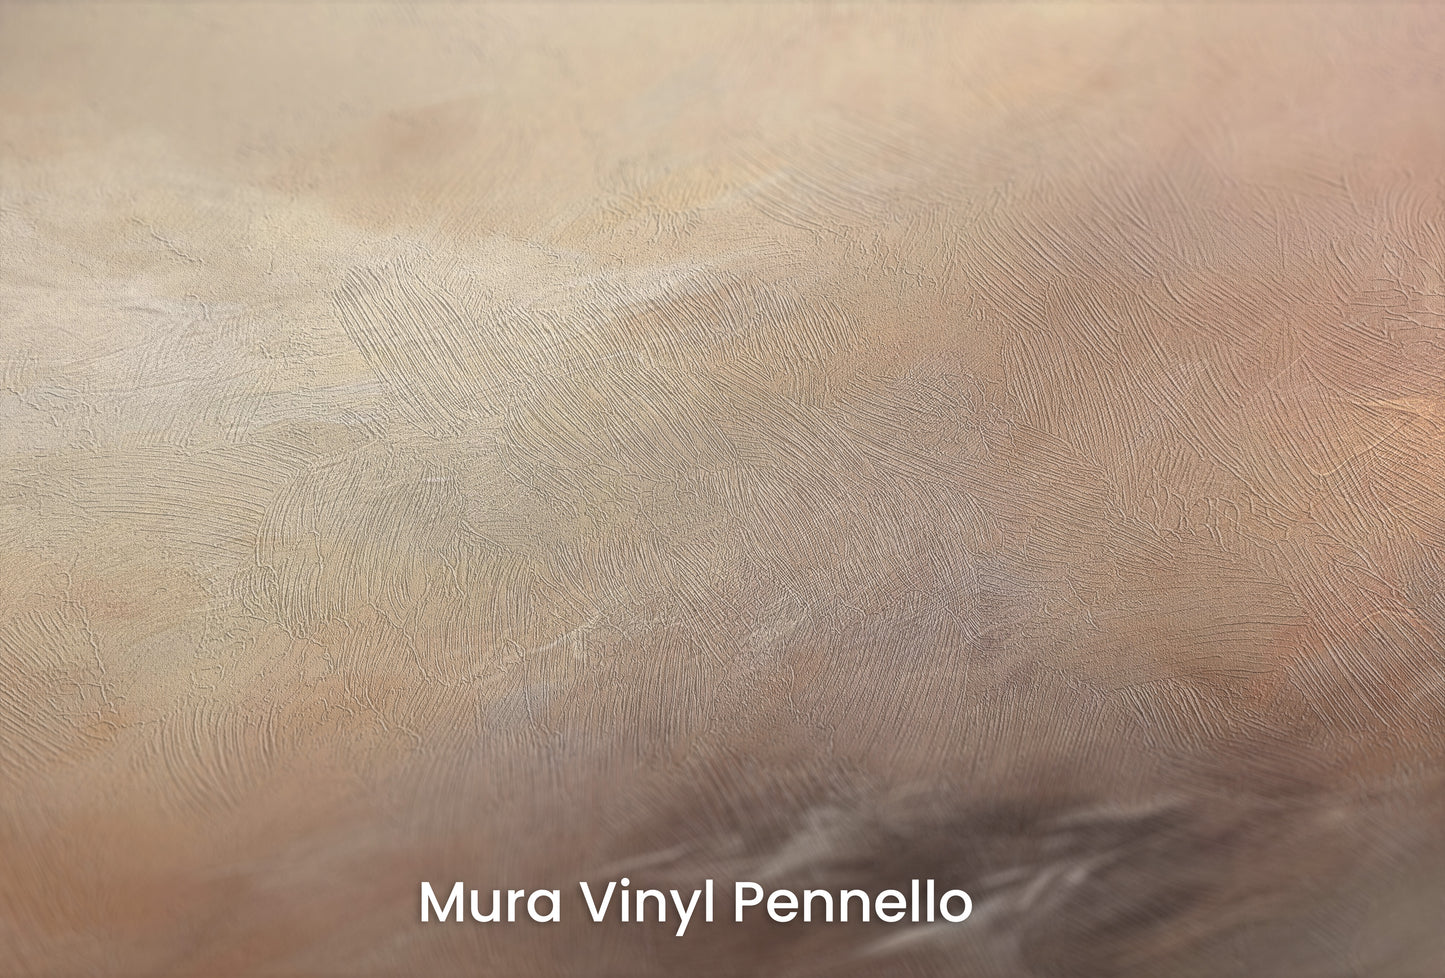 Zbliżenie na artystyczną fototapetę o nazwie WHISPERING DUSK na podłożu Mura Vinyl Pennello - faktura pociągnięć pędzla malarskiego.